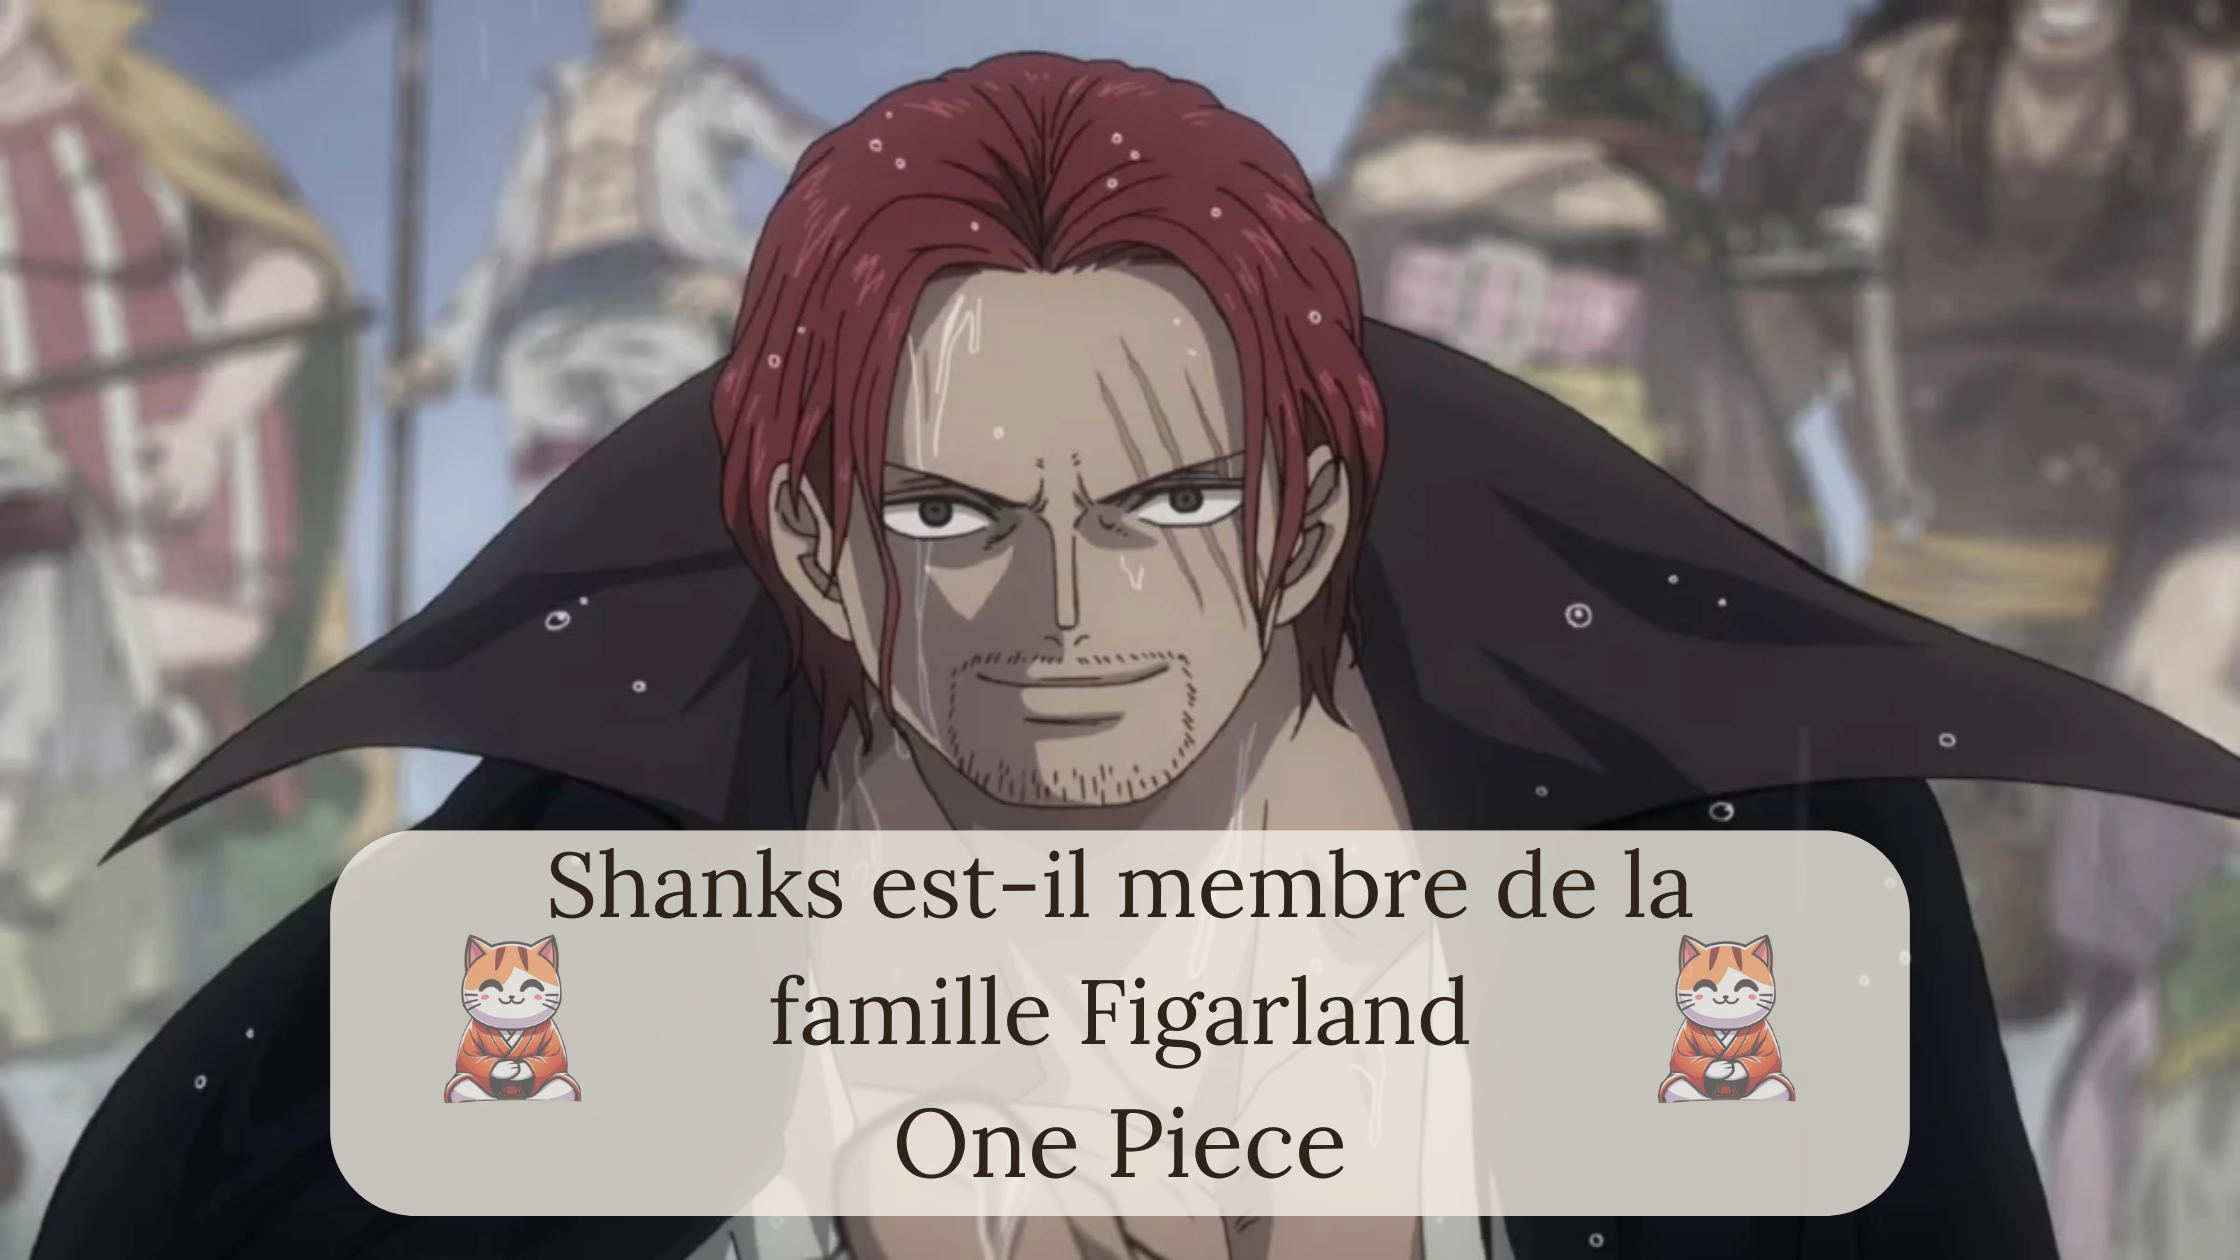 Shanks est-il membre de la famille Figarland et quel est son nom de famille ?